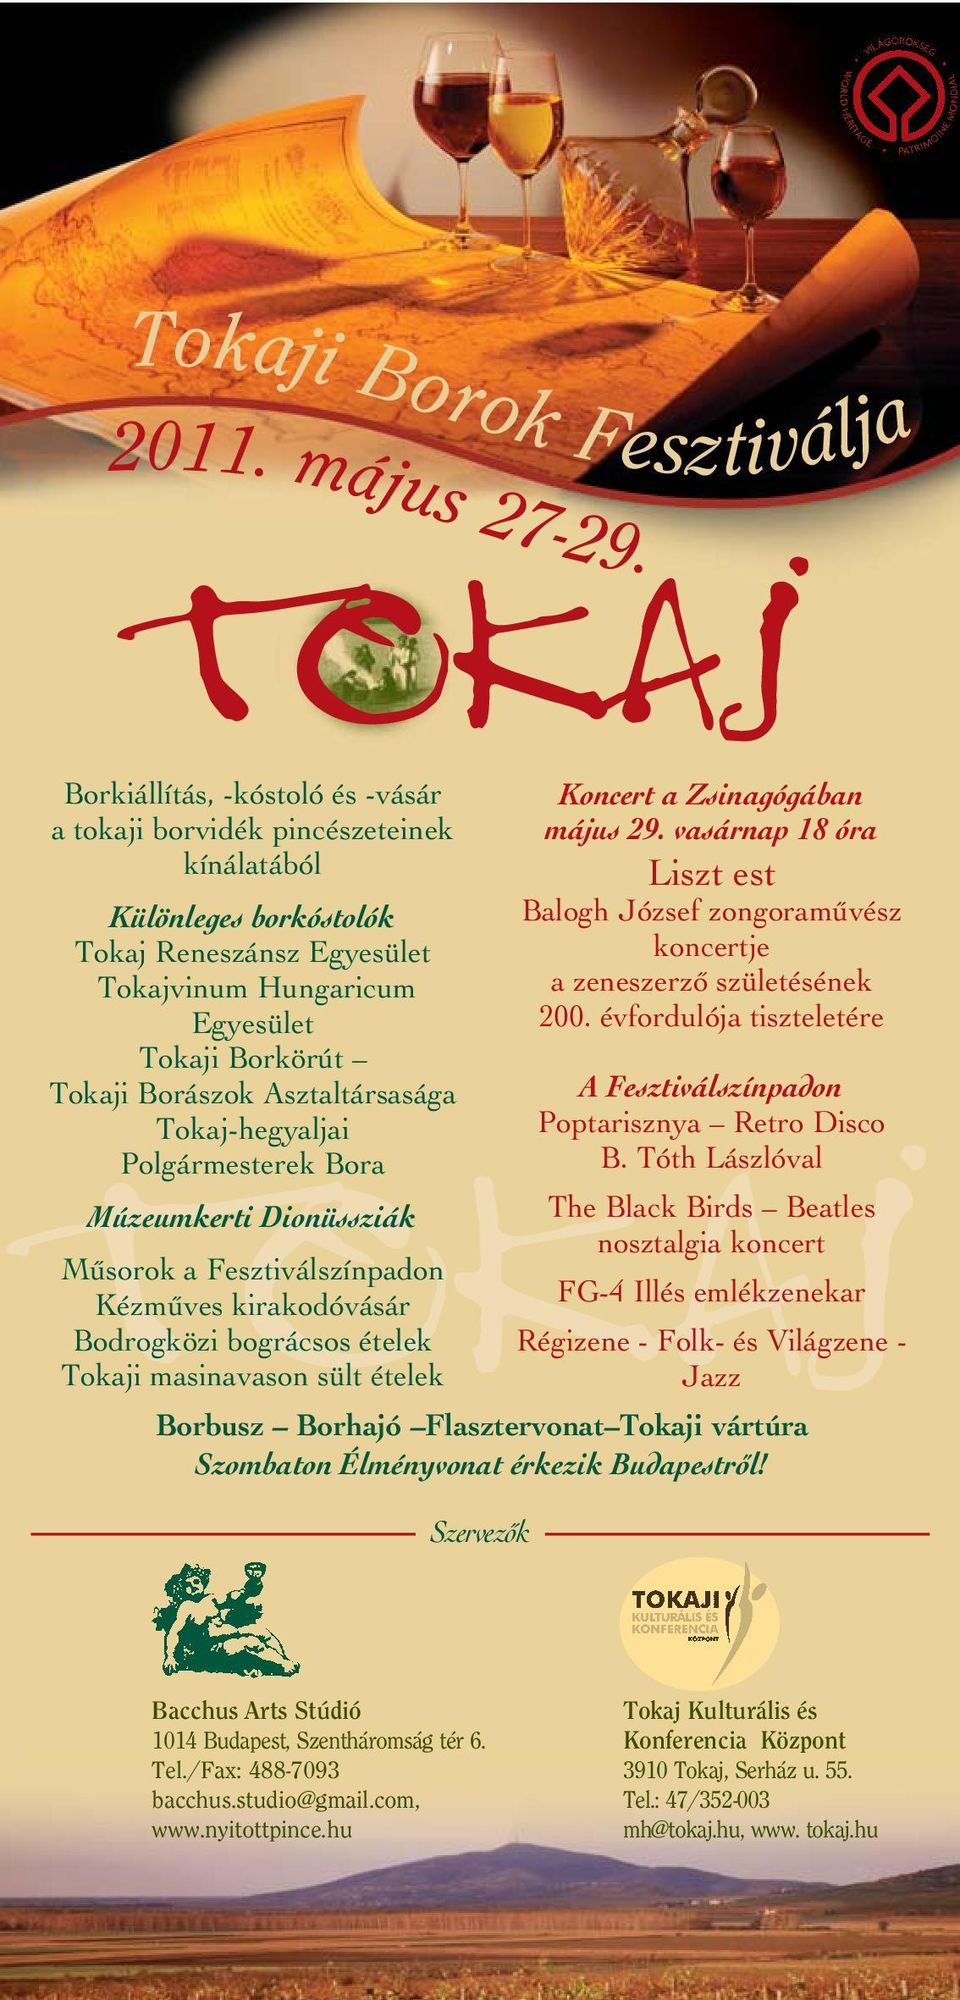 Asztaltársasága Tokaj-hegyaljai Polgármesterek Bora TOKAJ Múzeumkerti Dionüssziák Mûsorok Kézmûves kirakodóvásár Bodrogközi bográcsos ételek Tokaji masinavason sült ételek Szervezôk Koncert a